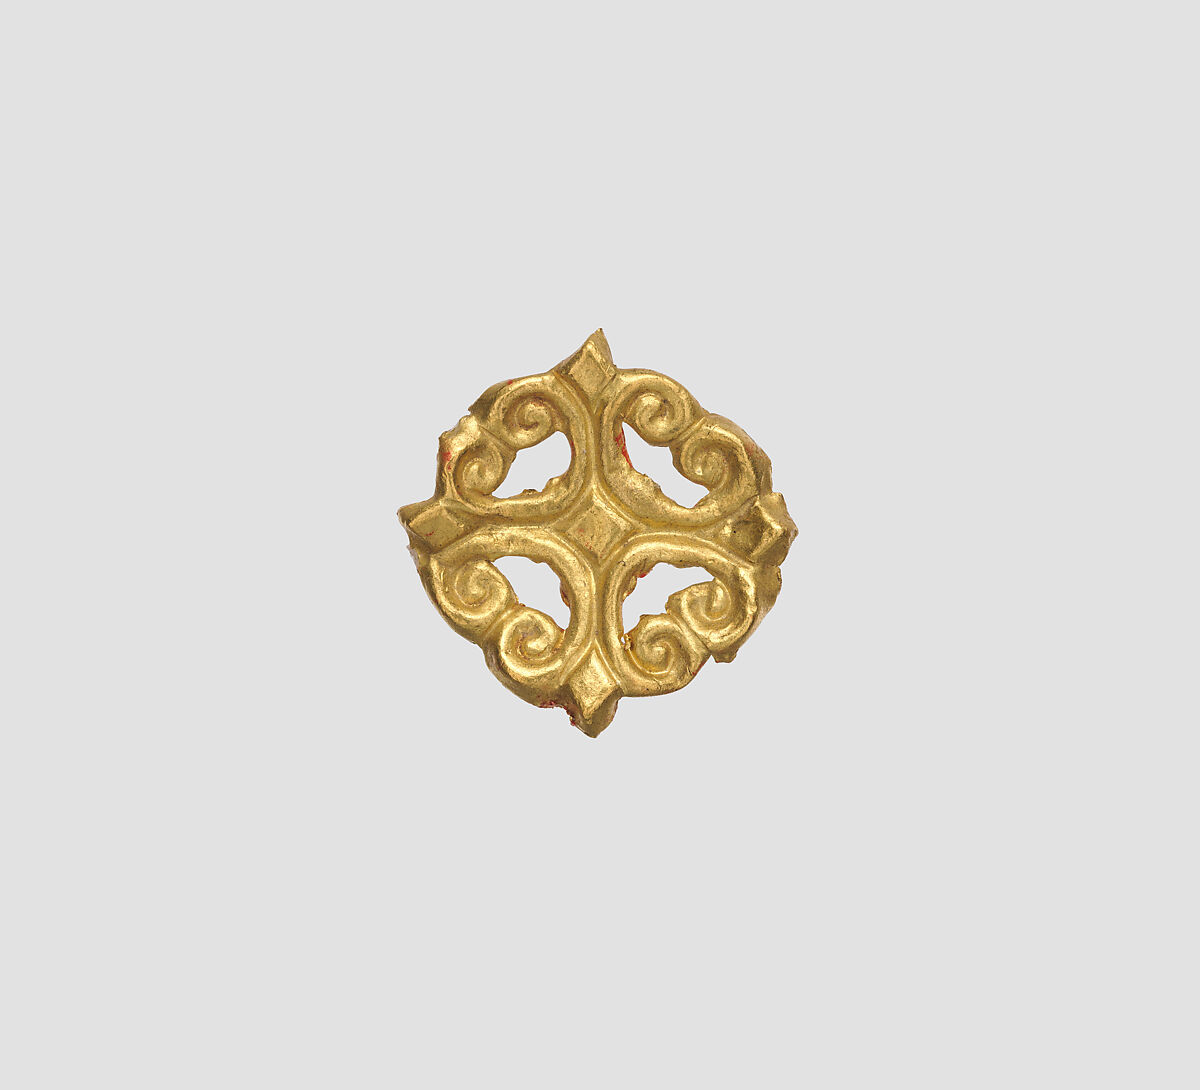 Dress ornament, Gold, Scythian 